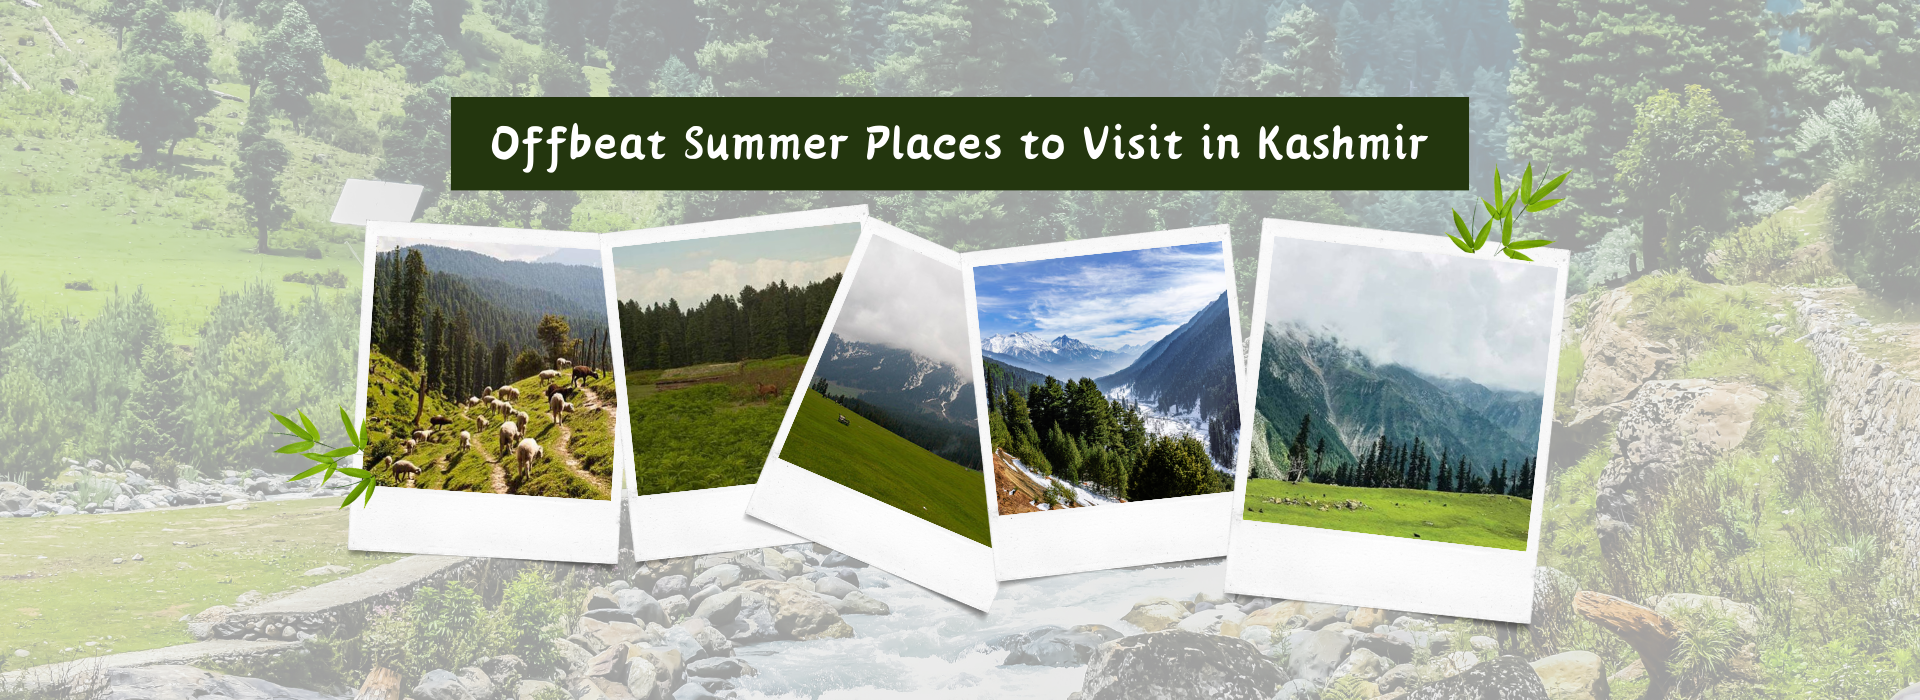 Offbeat Summer Places to Visit in Kashmir Kashmirhills.com